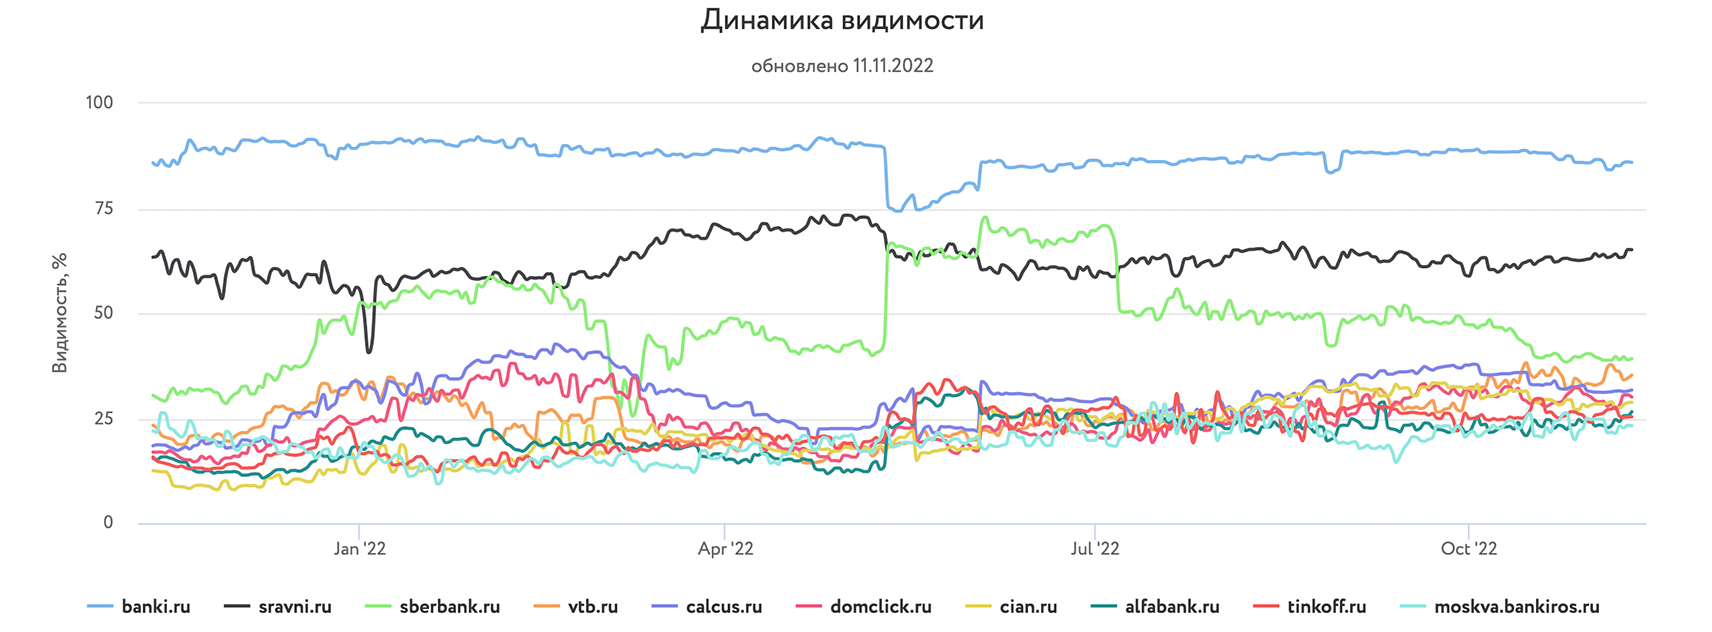 Банки.ру  лидер рейтинга видимости среди финансовых сайтов